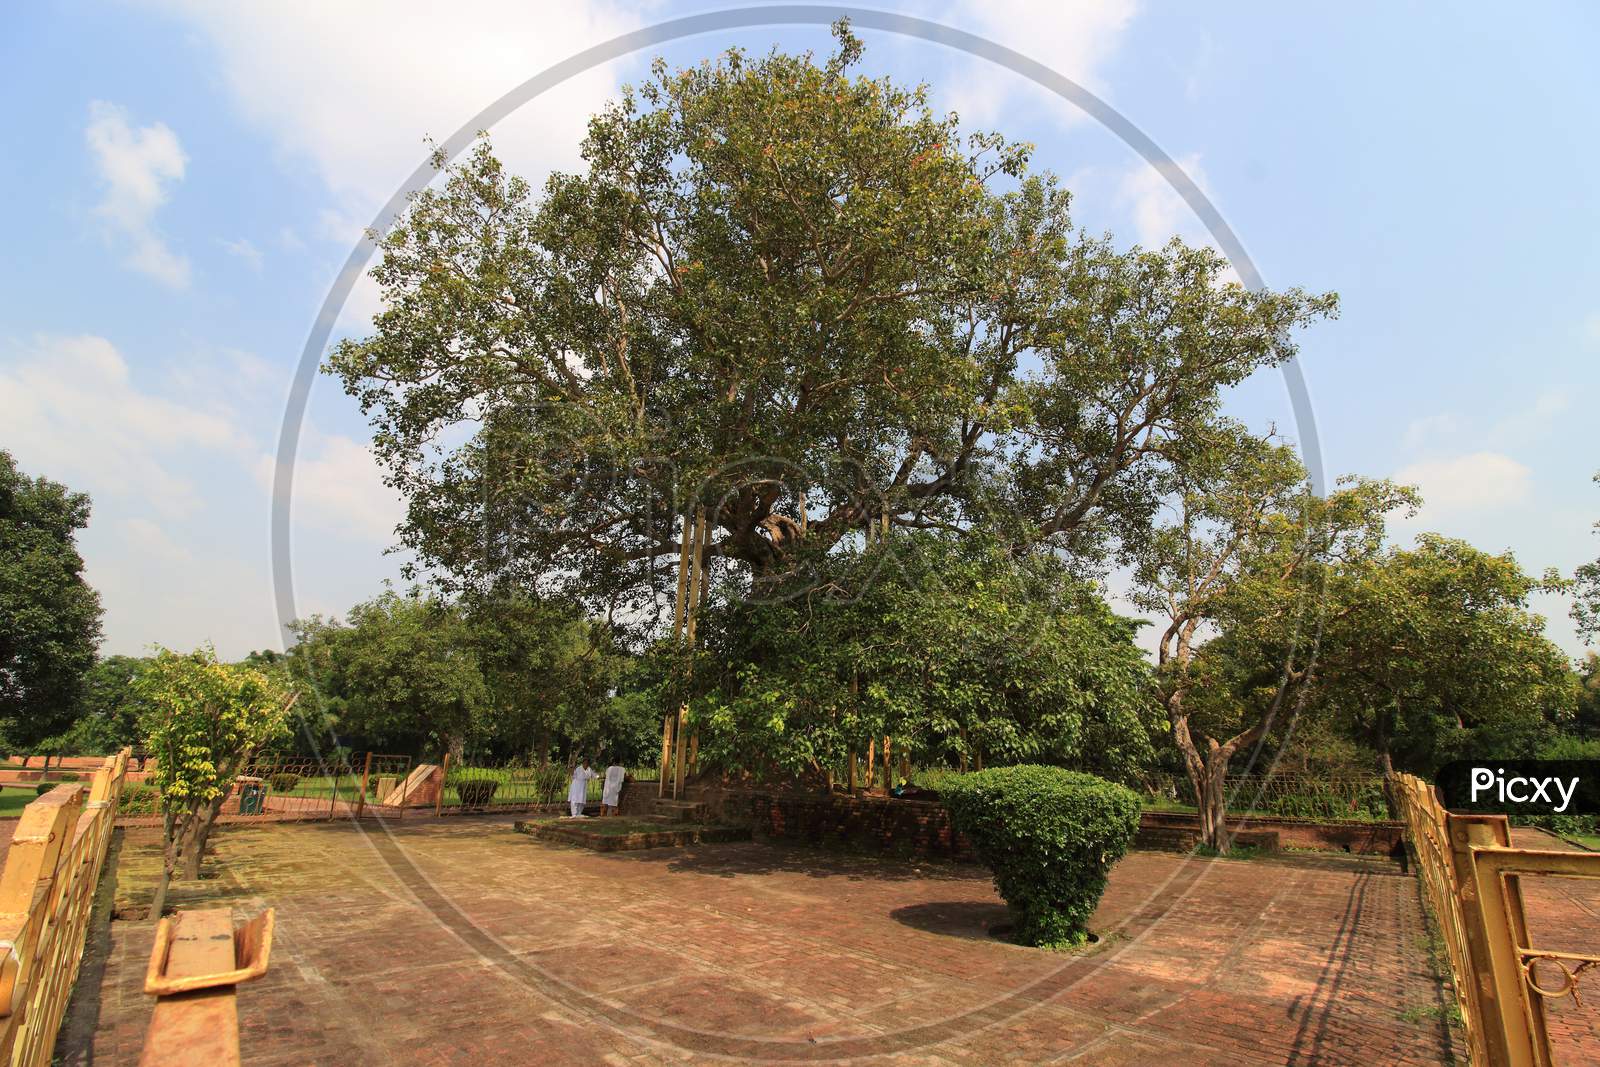 BODHI TREE SHRAVASTI UTTAR PRADESH INDIA